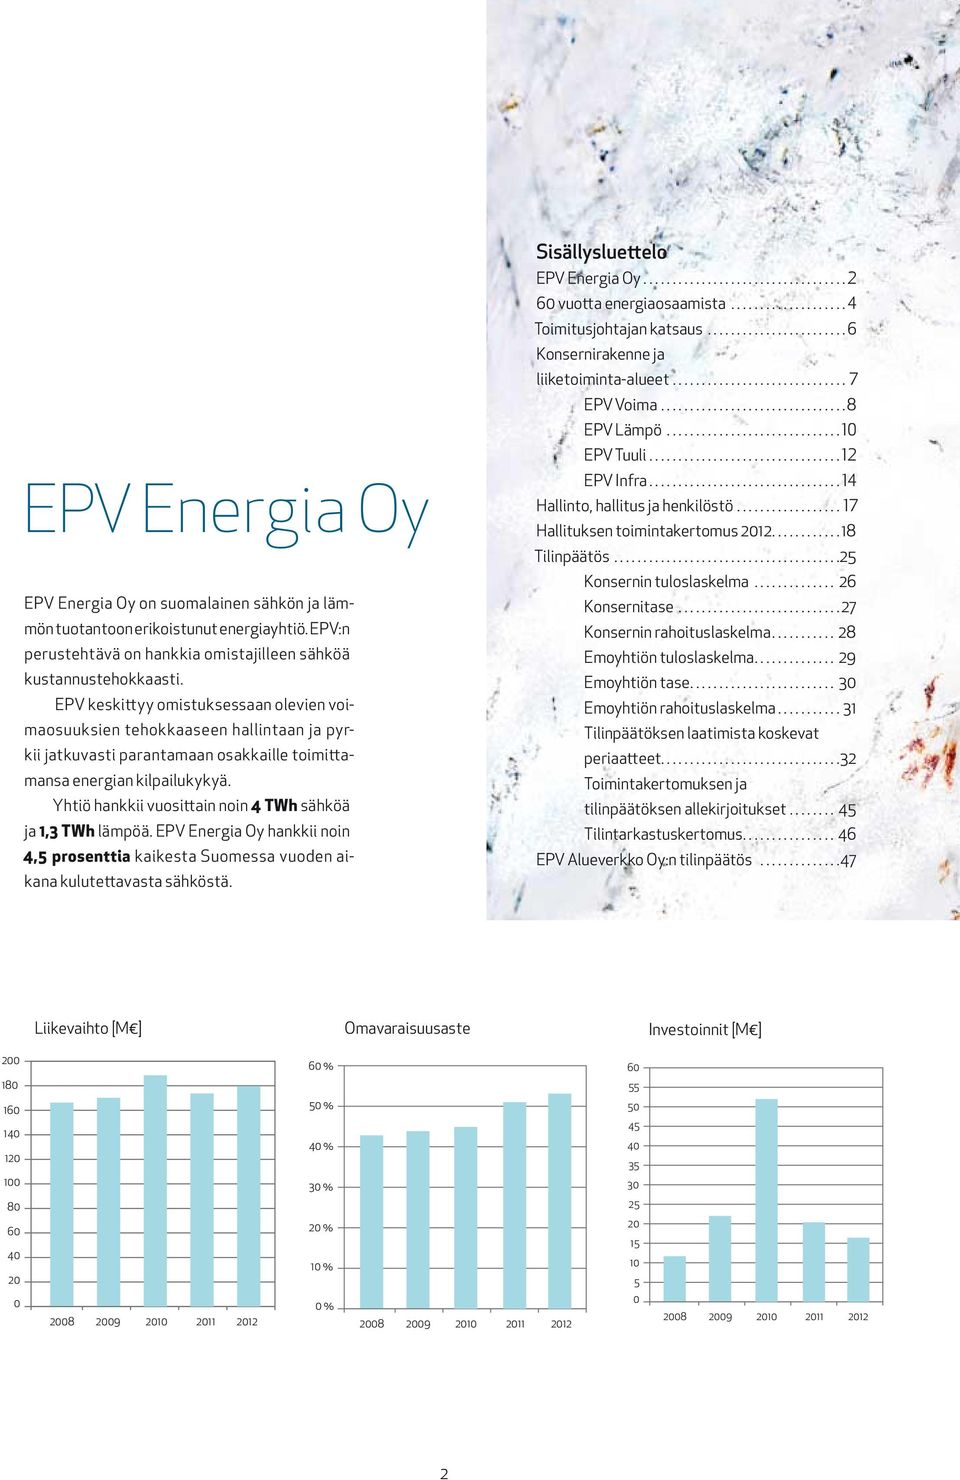 Yhtiö hankkii vuosittain noin 4 TWh sähköä ja 1,3 TWh lämpöä. EPV Energia Oy hankkii noin 4,5 prosenttia kaikesta Suomessa vuoden aikana kulutettavasta sähköstä. Sisällysluettelo EPV Energia Oy.